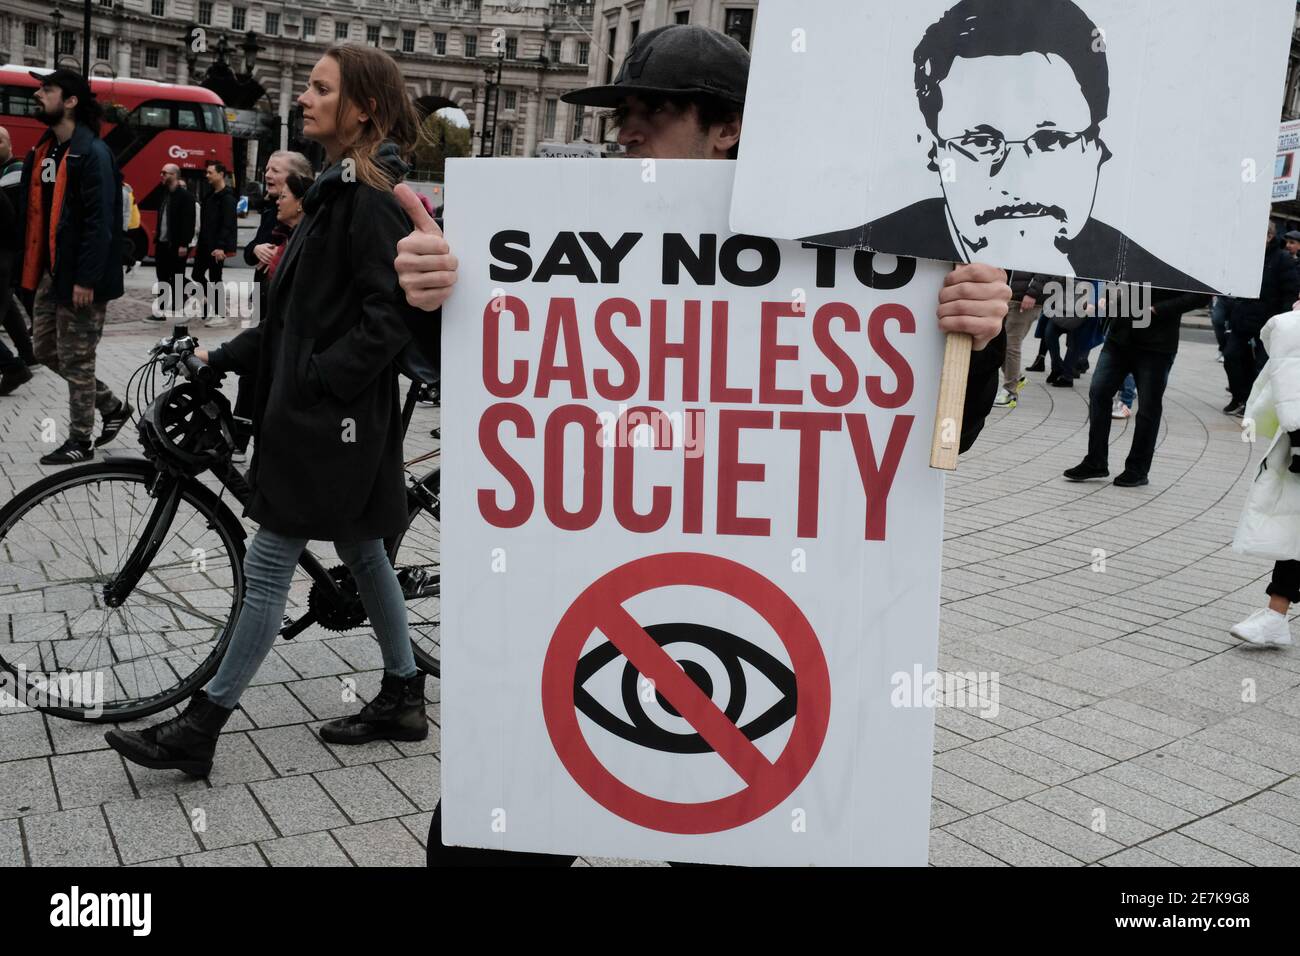 LONDRA, 24 OTTOBRE 2020: Un uomo che protestava contro una Società senza contanti, durante una protesta anti-blocco. Foto Stock